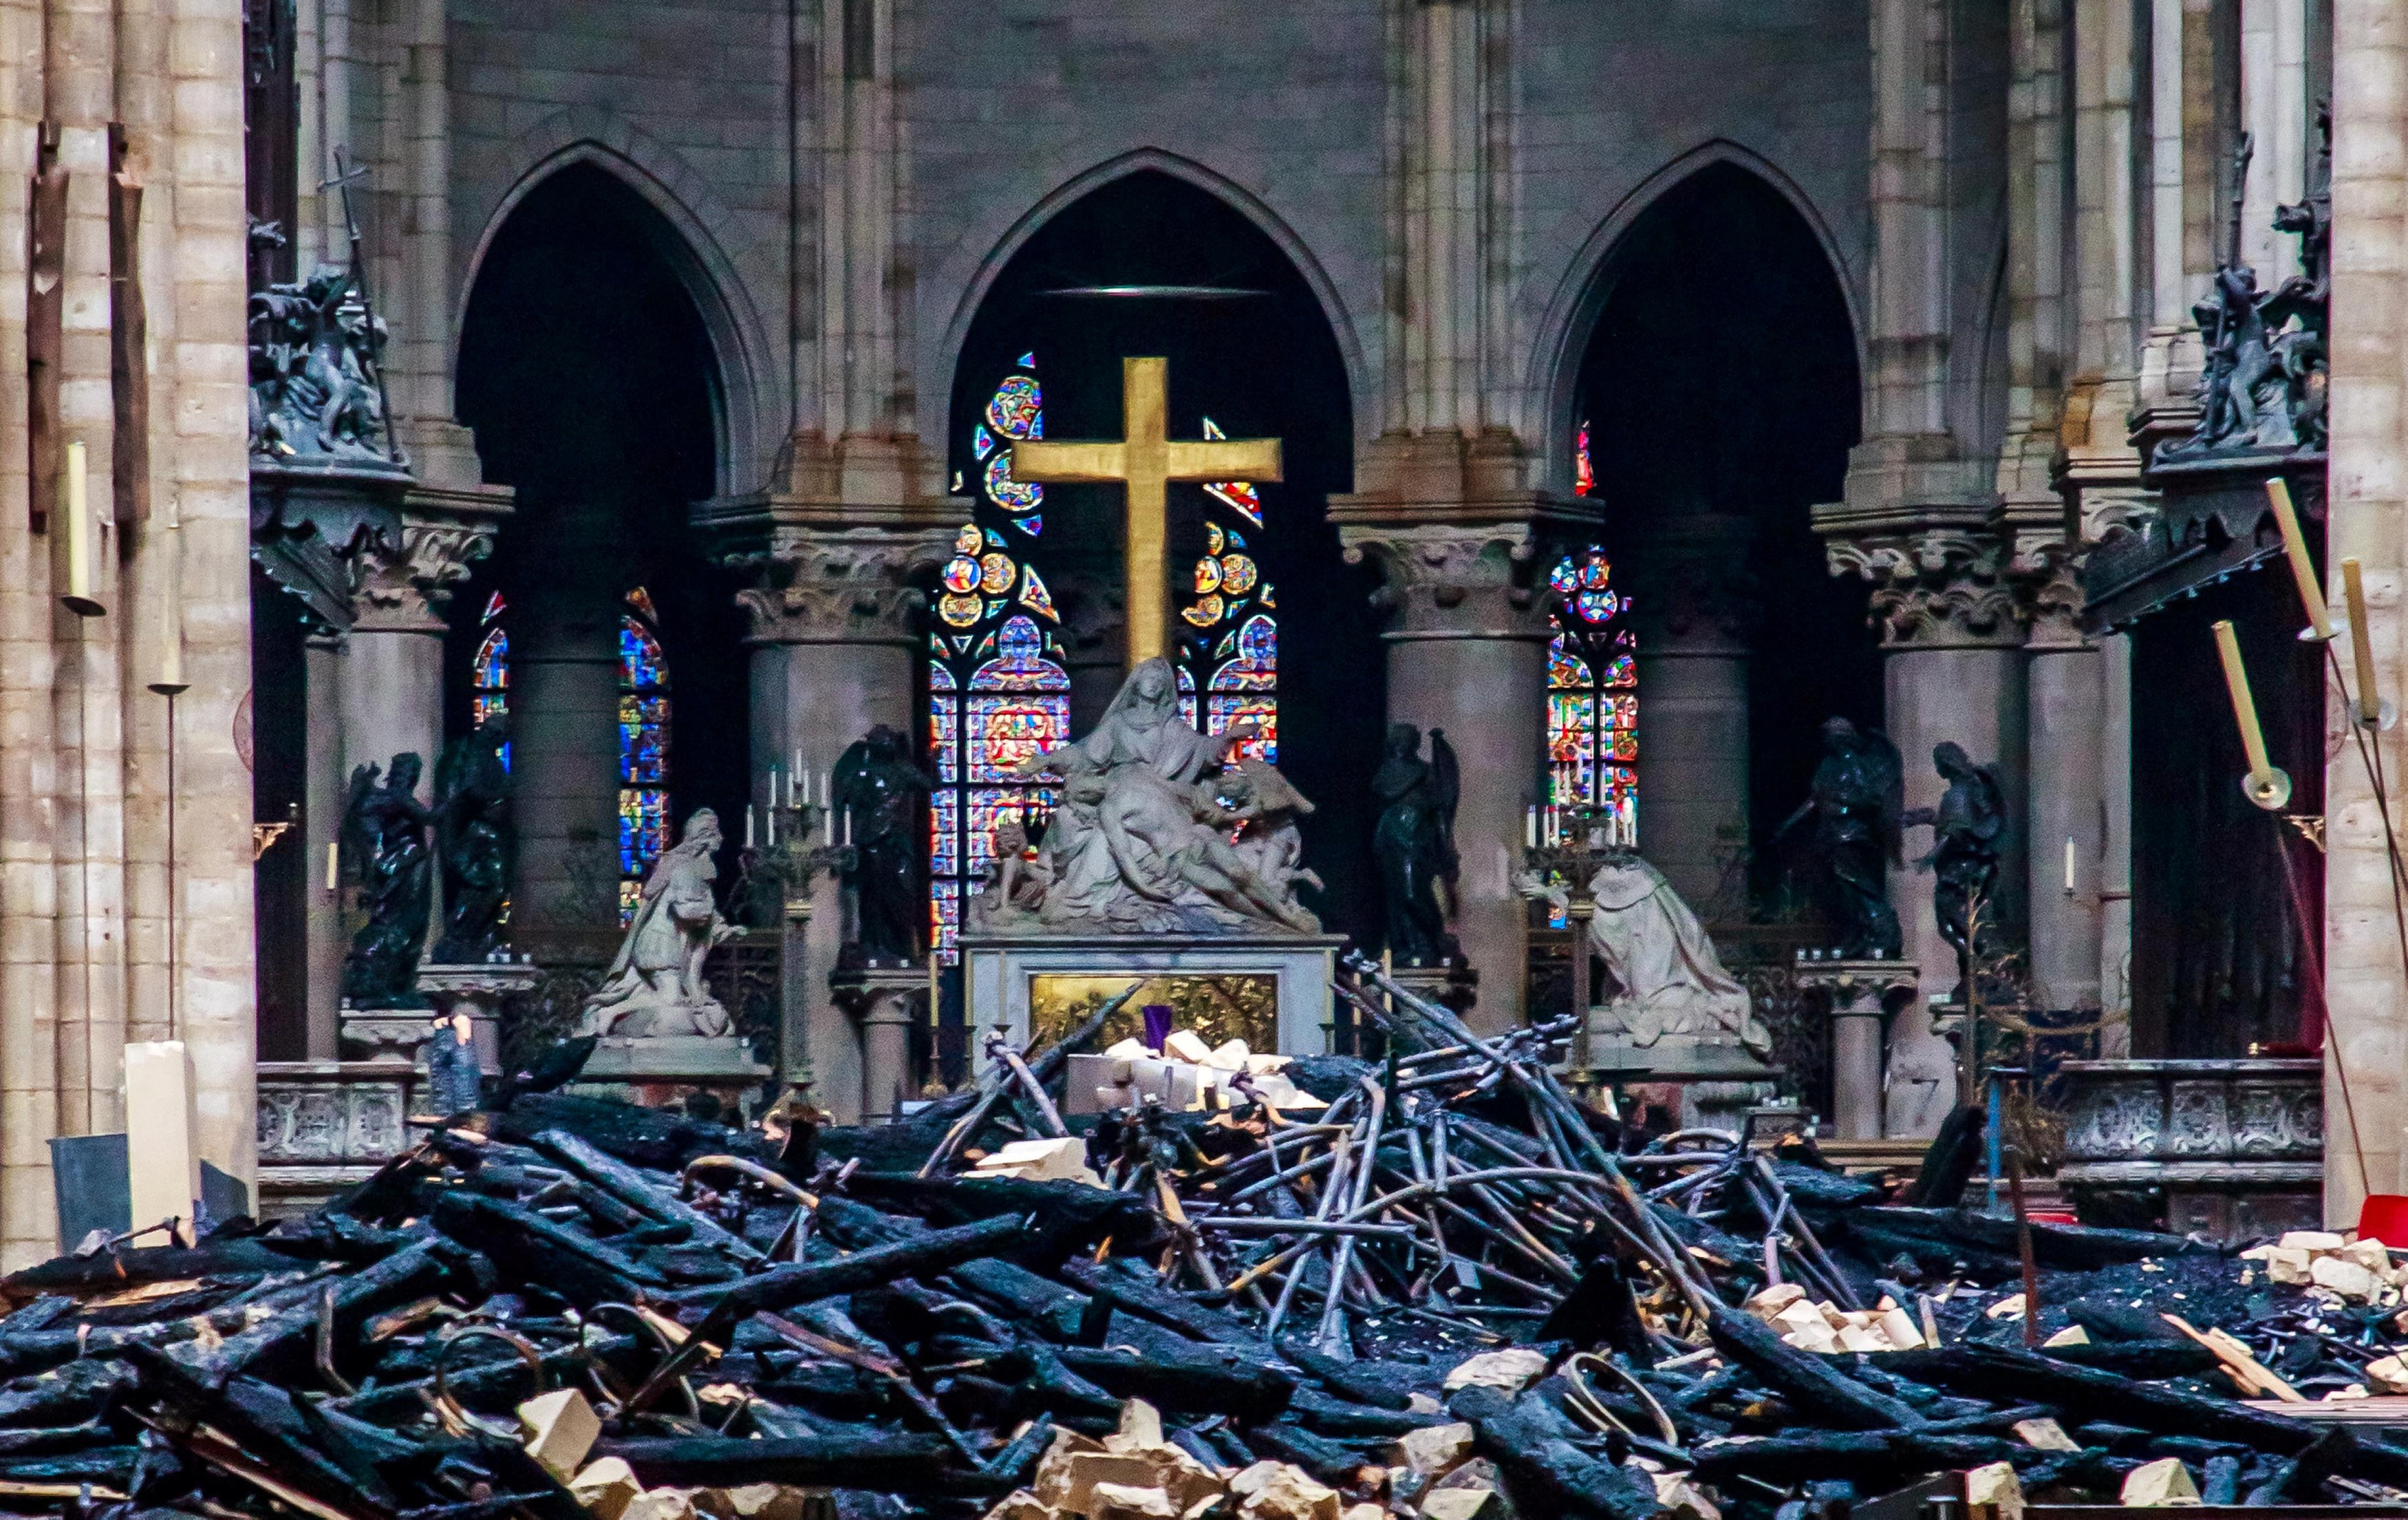 Lý do khiến Nhà thờ Đức Bà Paris khó có thể phục dựng như nguyên bản